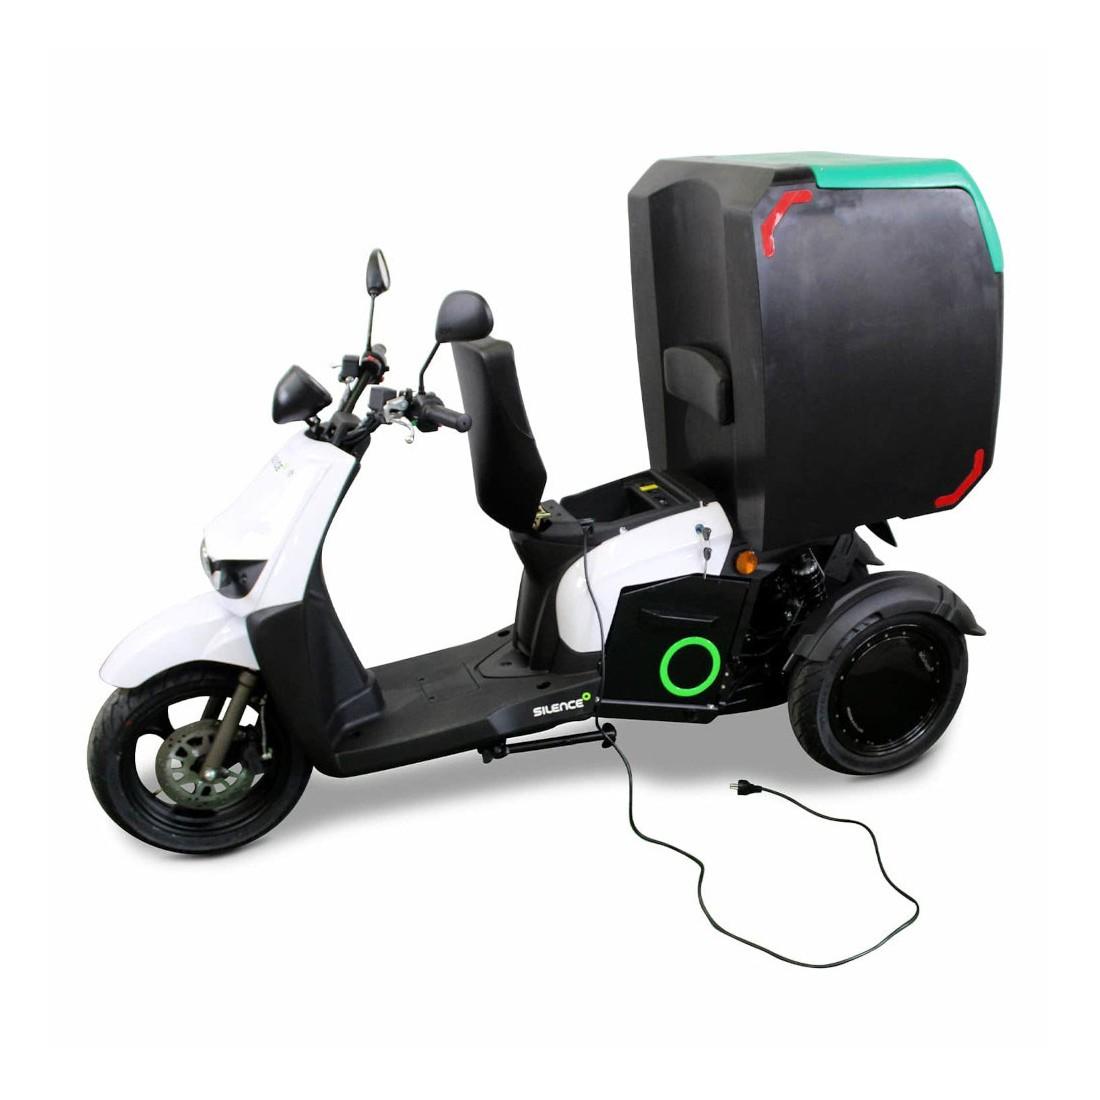 Silence S03, una scooter eléctrica de reparto con 3 ruedas